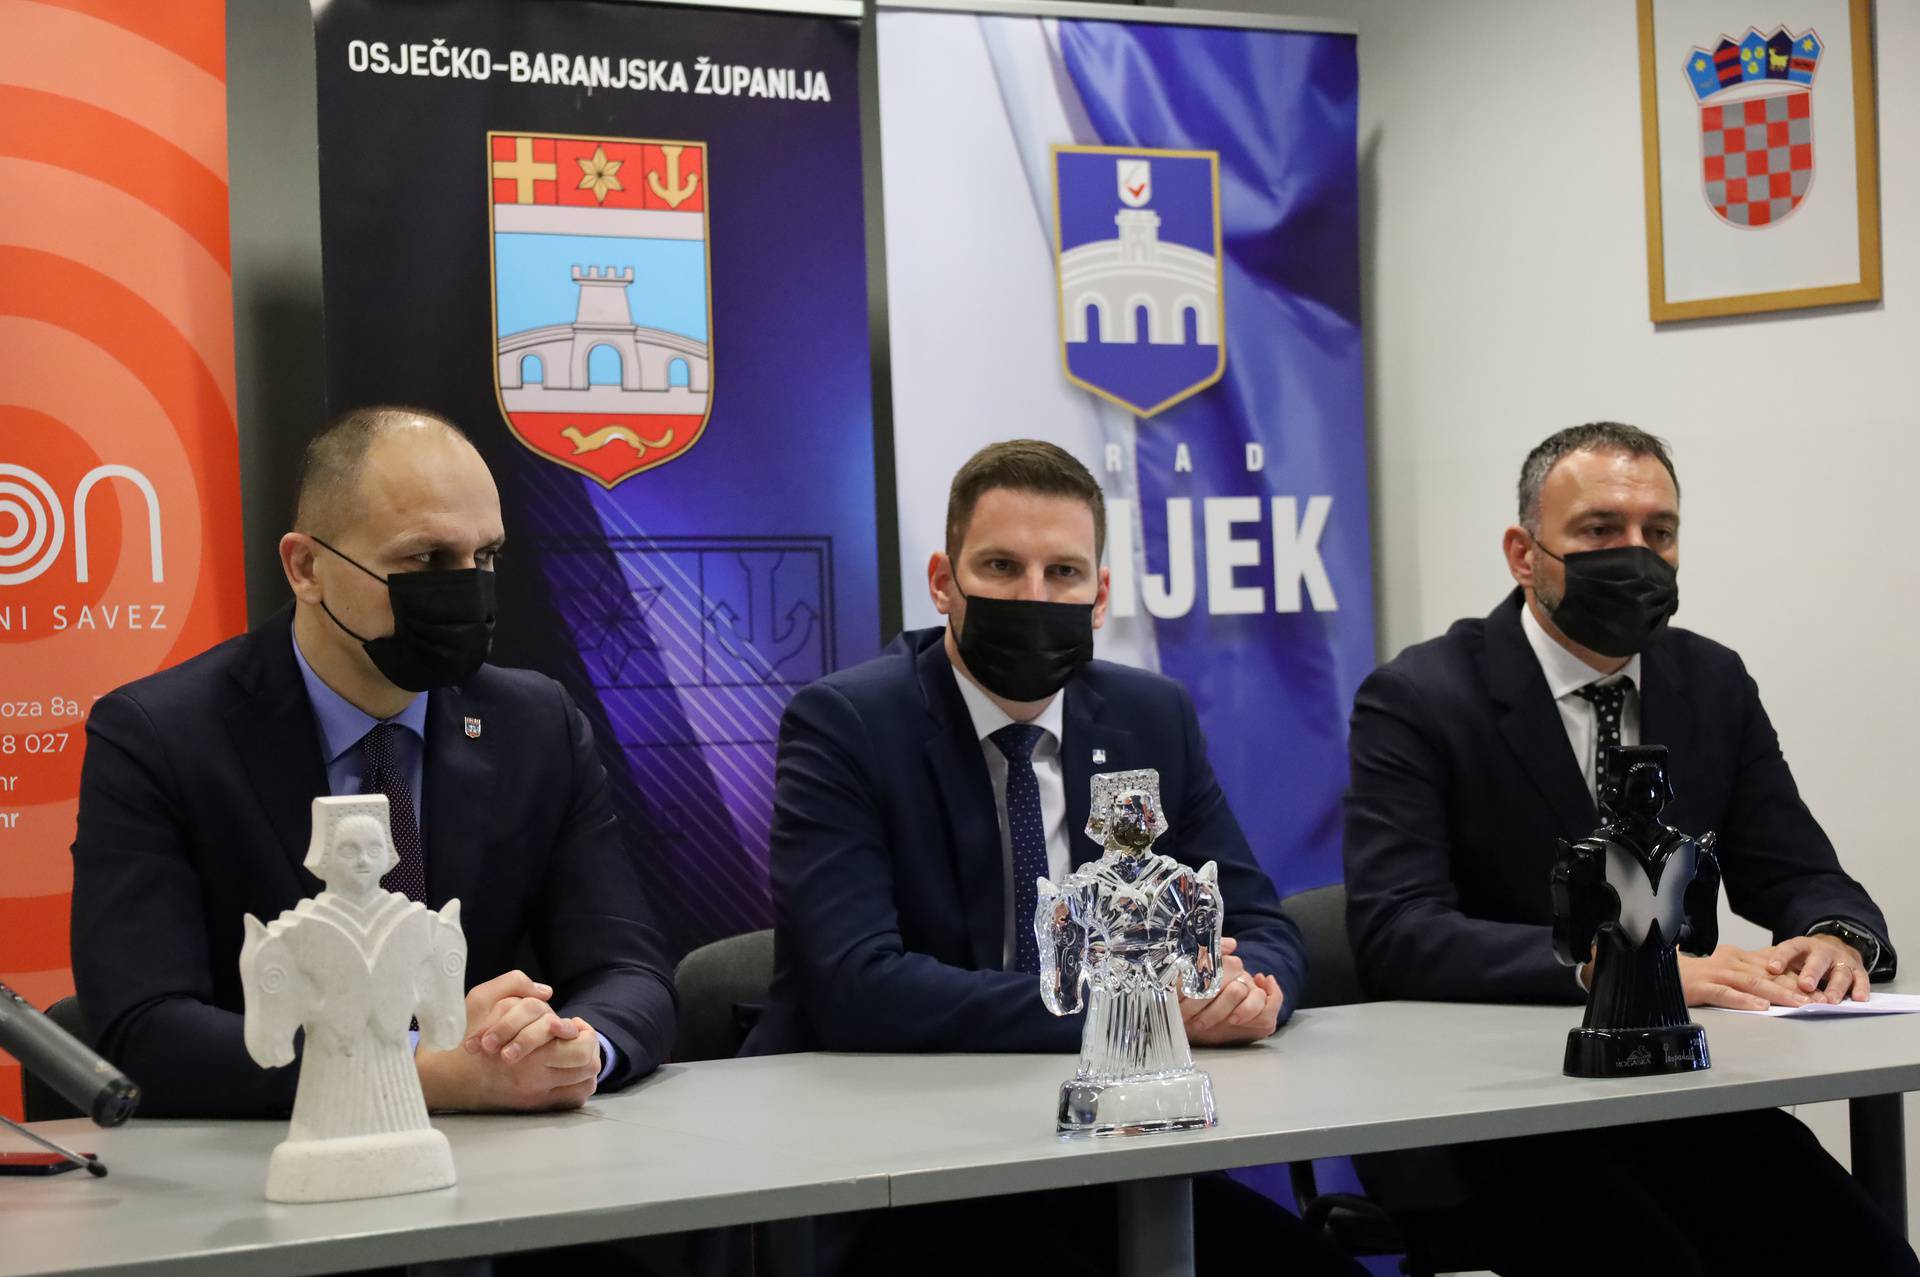 Porin stiže u Osijek: 'Nakon dugo vremena napokon ćemo ponovno moći ući u dvoranu'